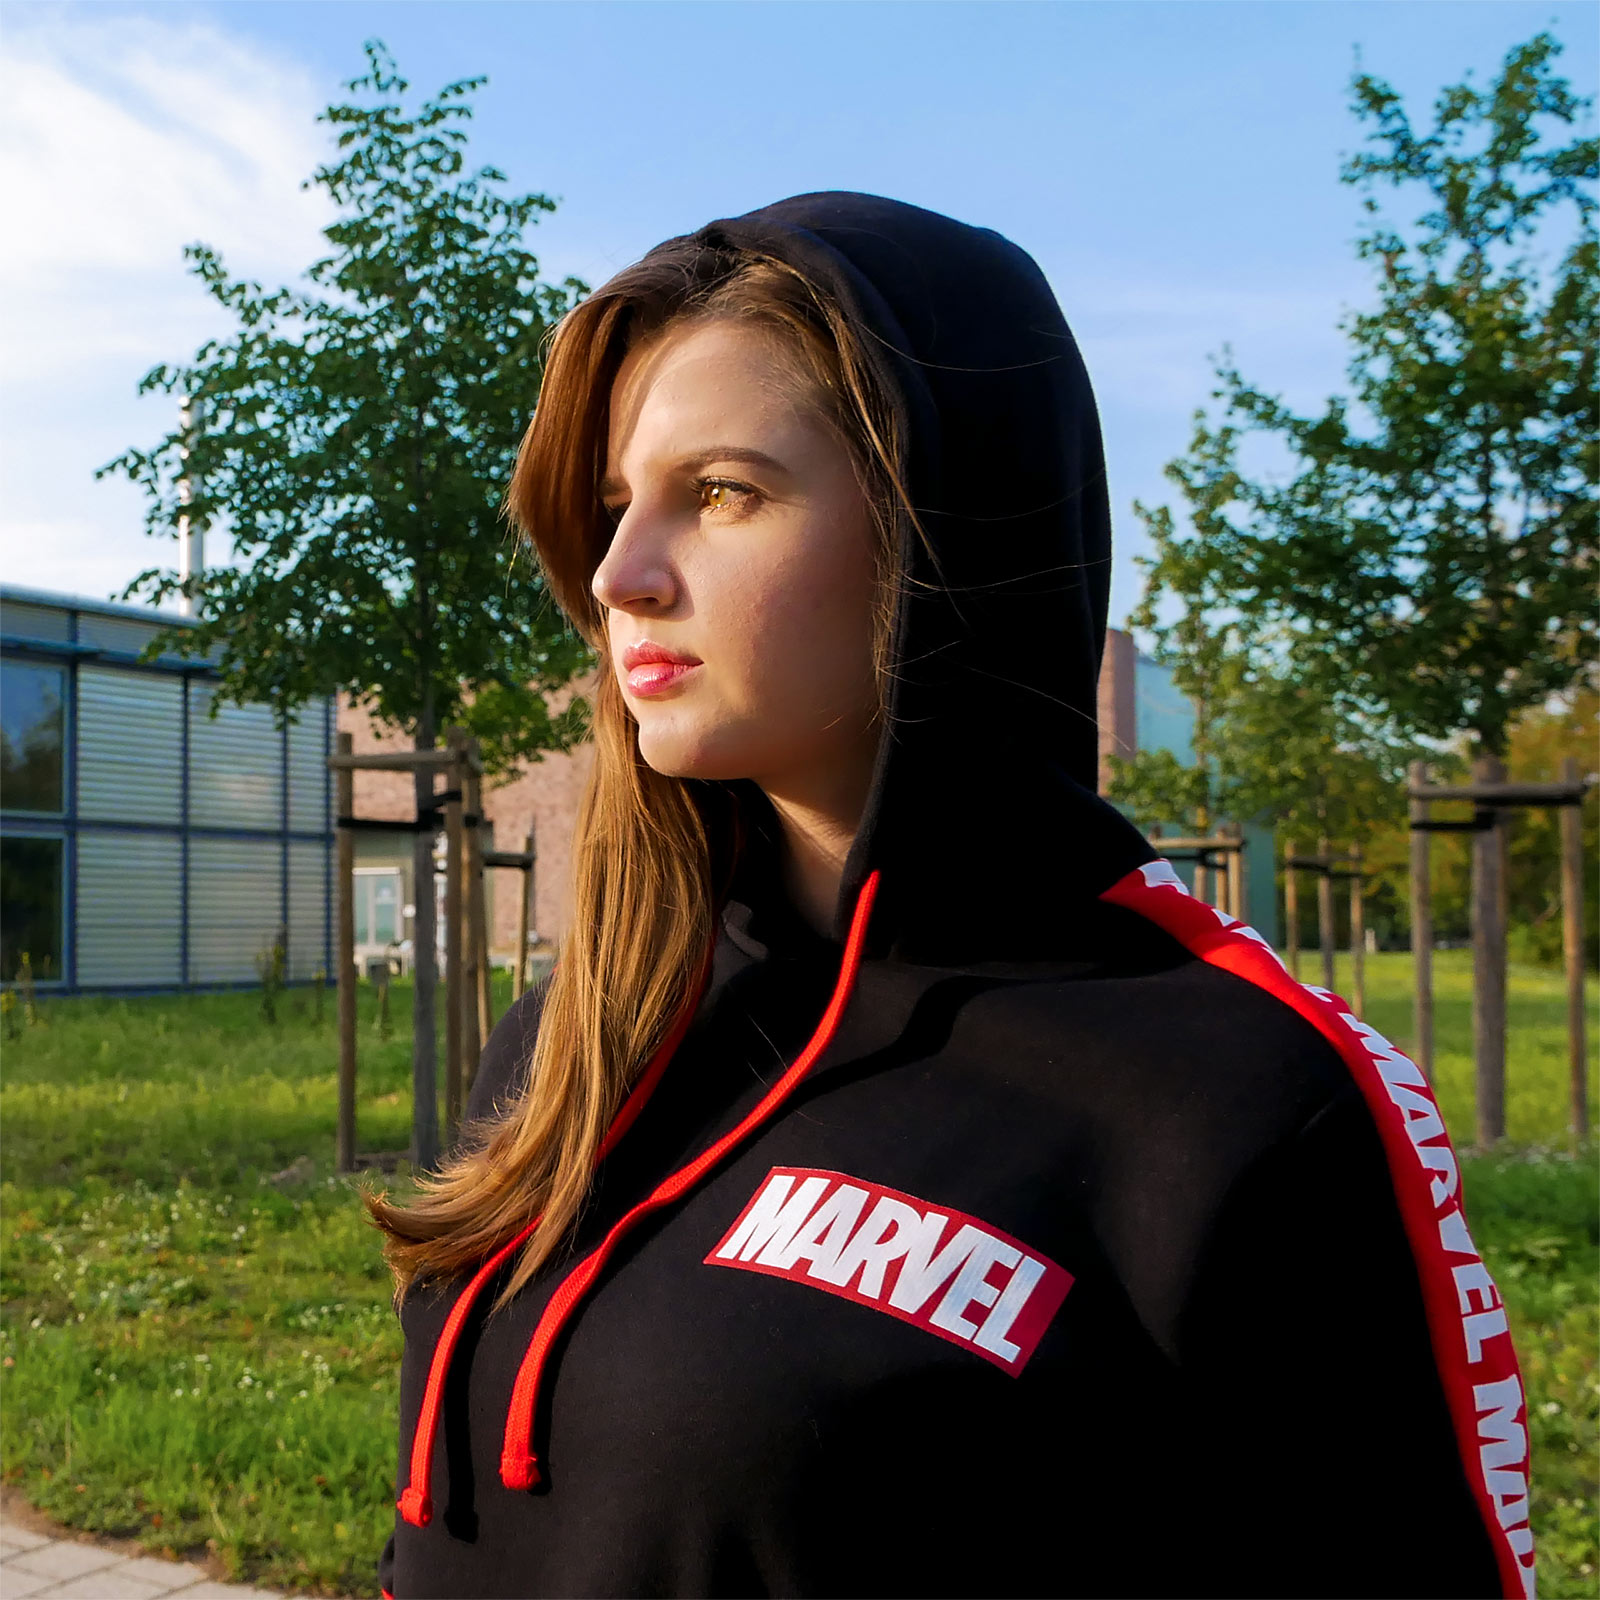 Marvel - Logo Hoodie mit Ärmelprint schwarz